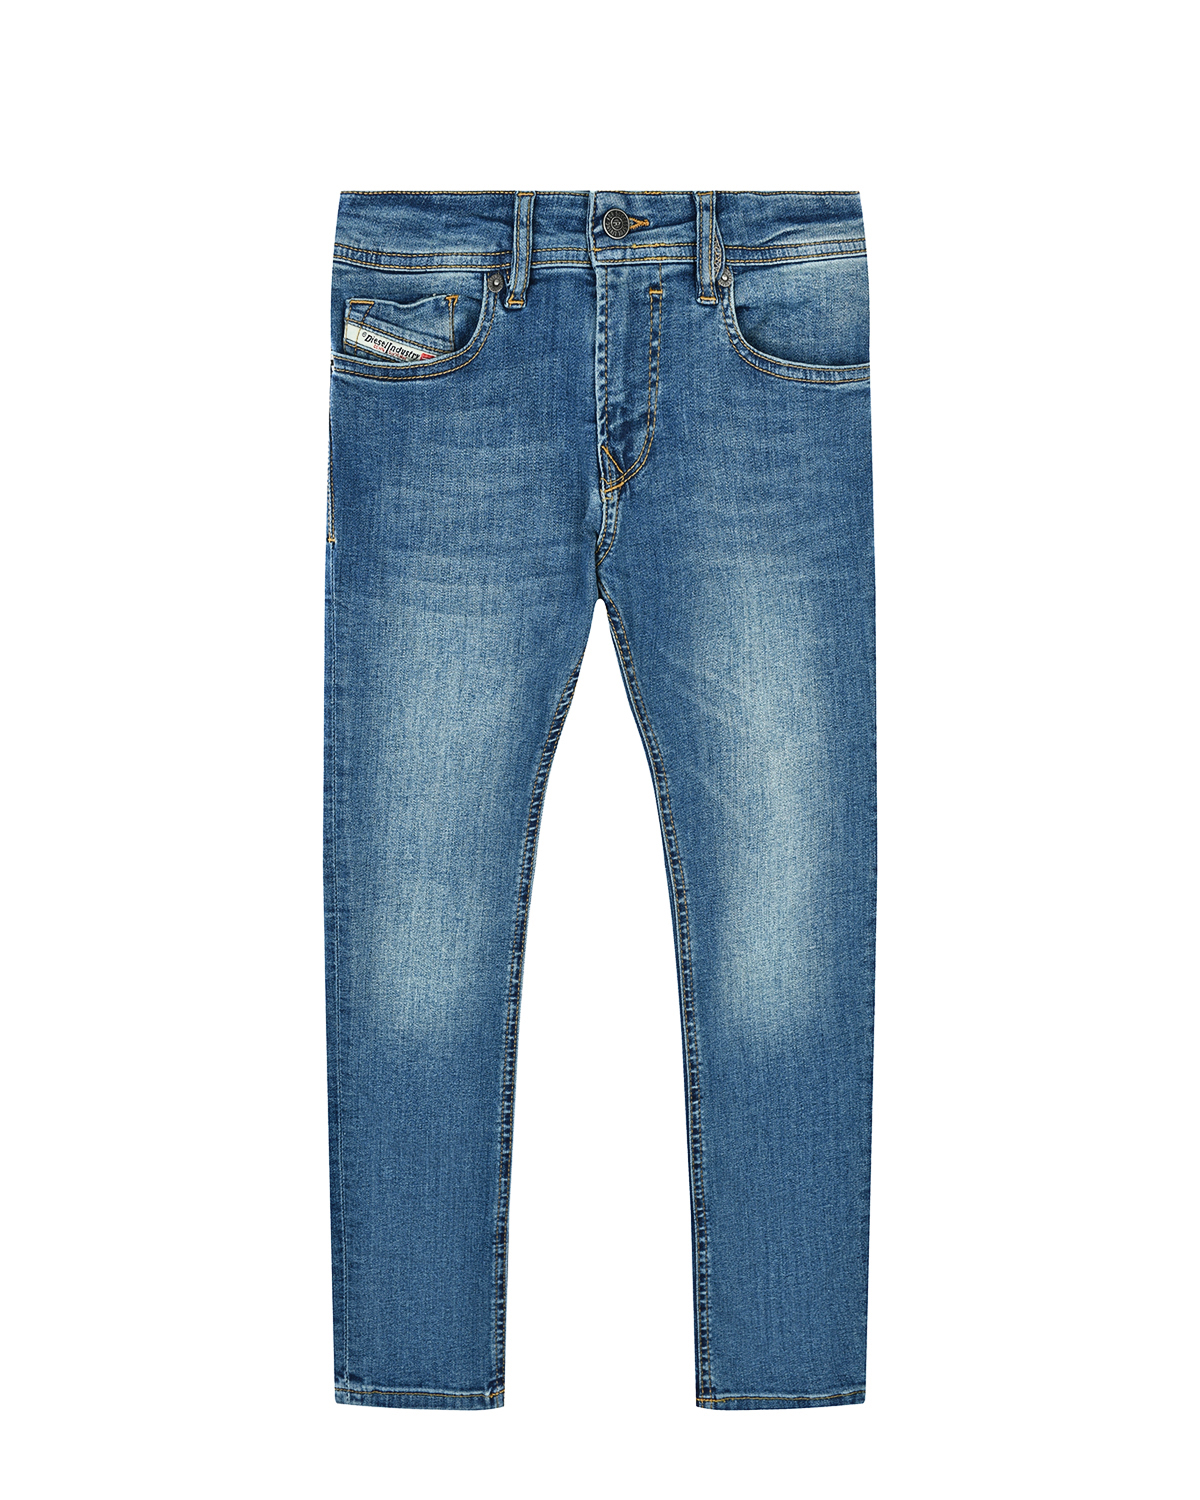 Узкие голубые джинсы Diesel детские, размер 128, цвет голубой